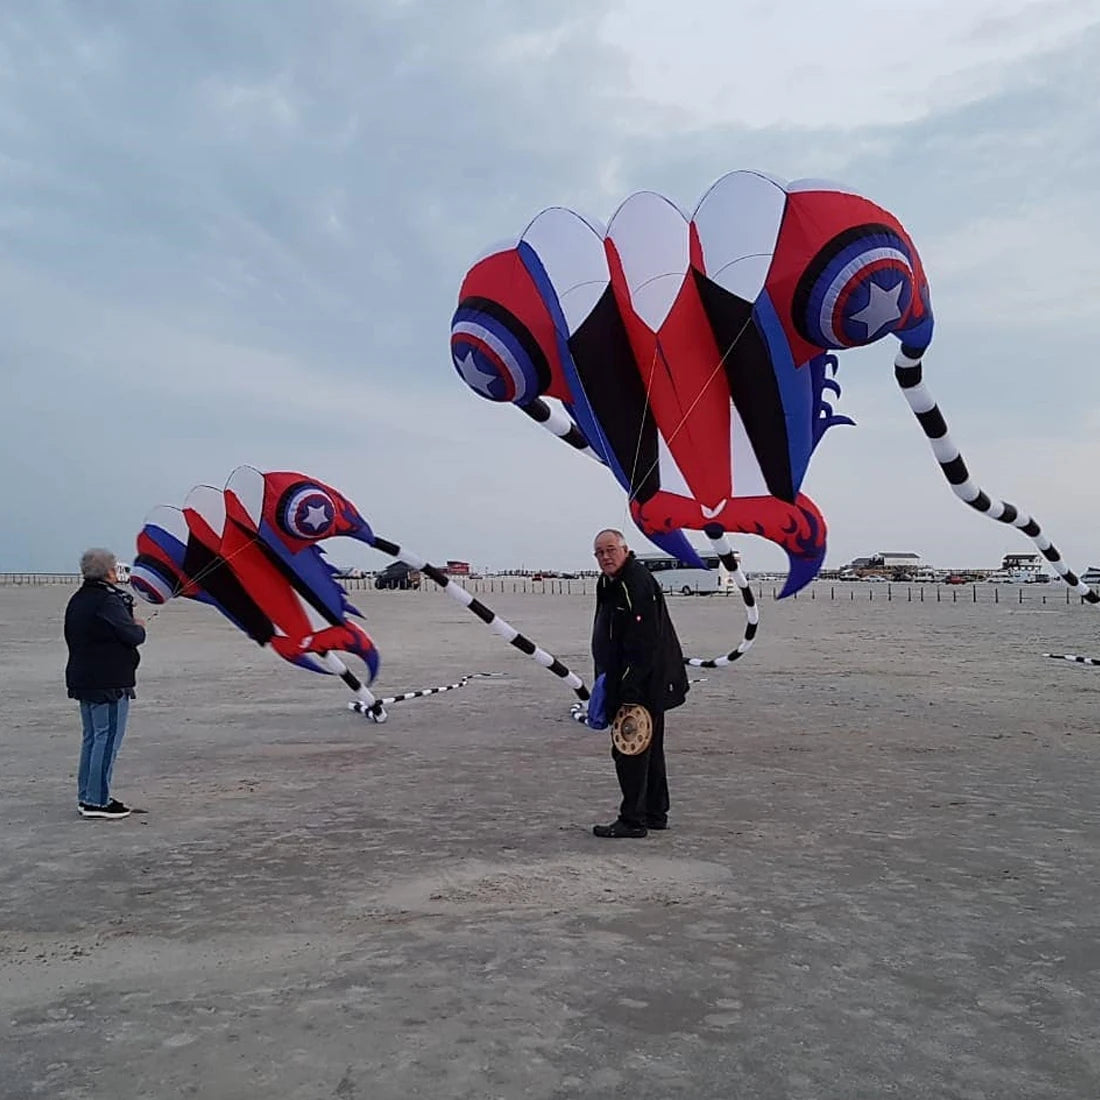 Trilobite Kite Large Single Line Parafoil Kite Line Laundry for 7㎡~16㎡ - ToylandEU